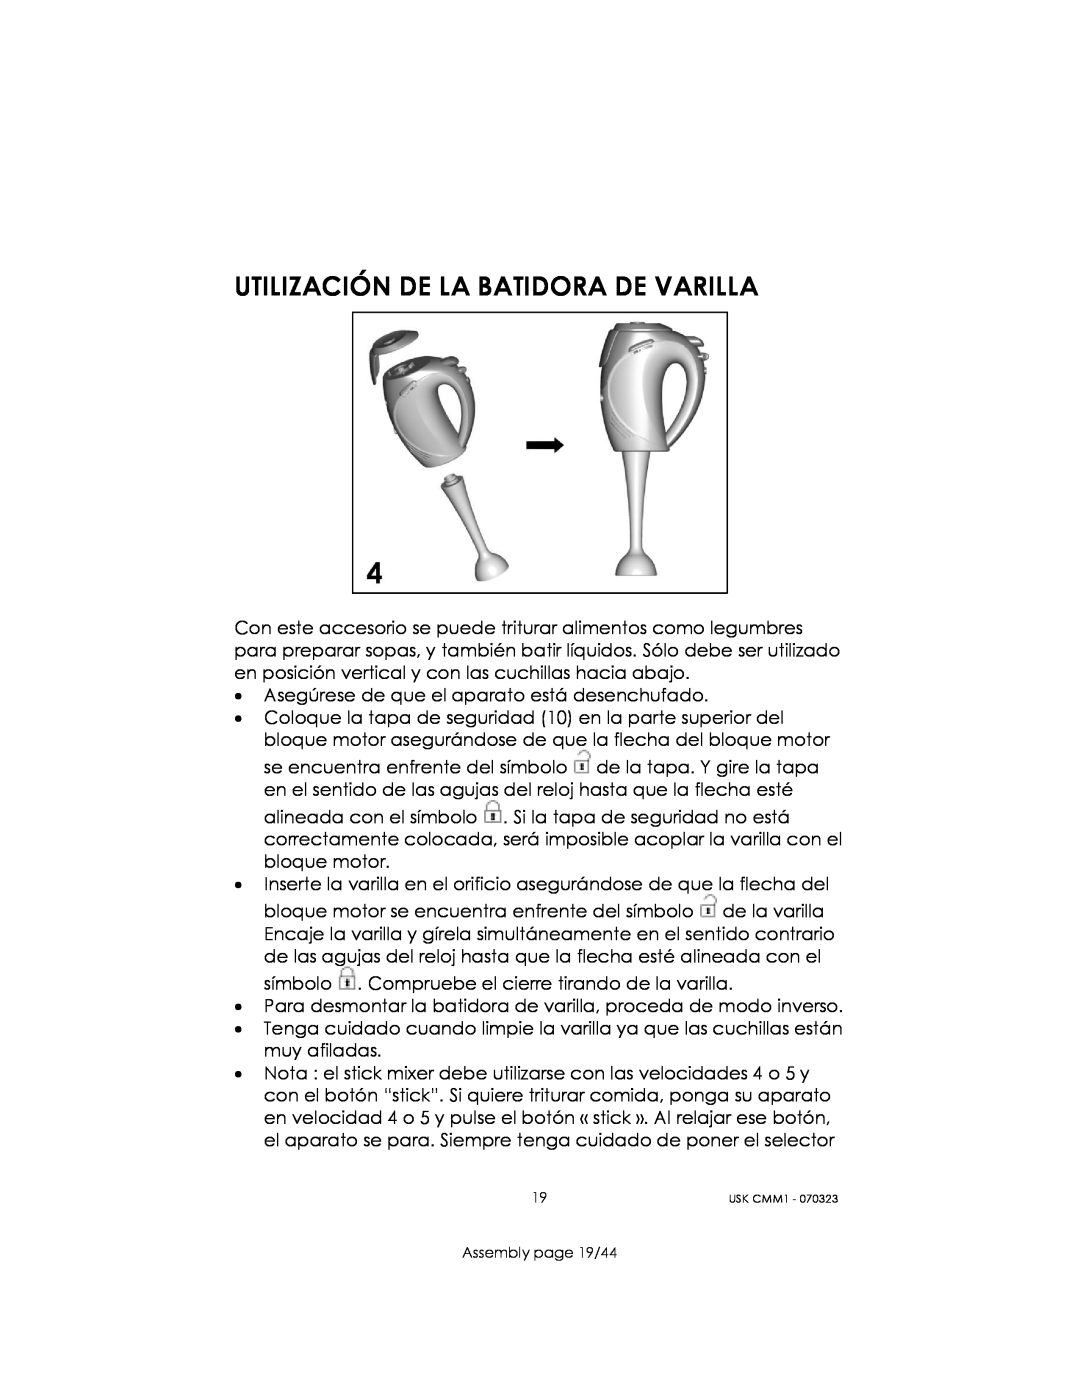 Kalorik USK CMM 1 manual Utilización De La Batidora De Varilla, Assembly page 19/44 